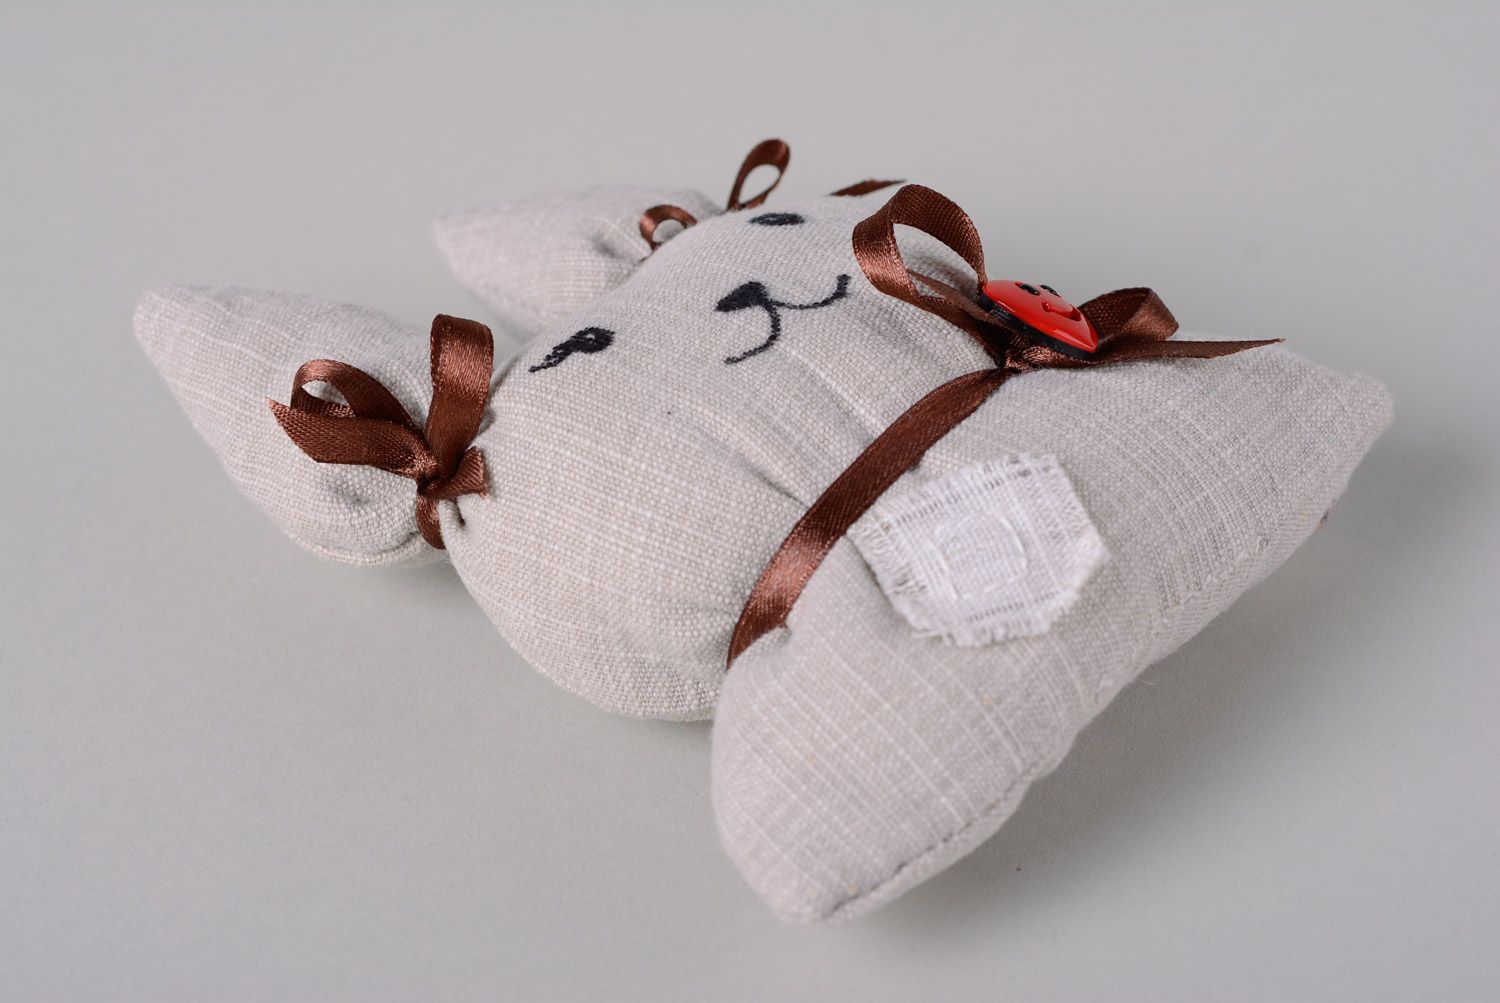 Textil Kuscheltier Hase aus Watte und Stoff weiß mit Schleife niedlich handmade foto 4